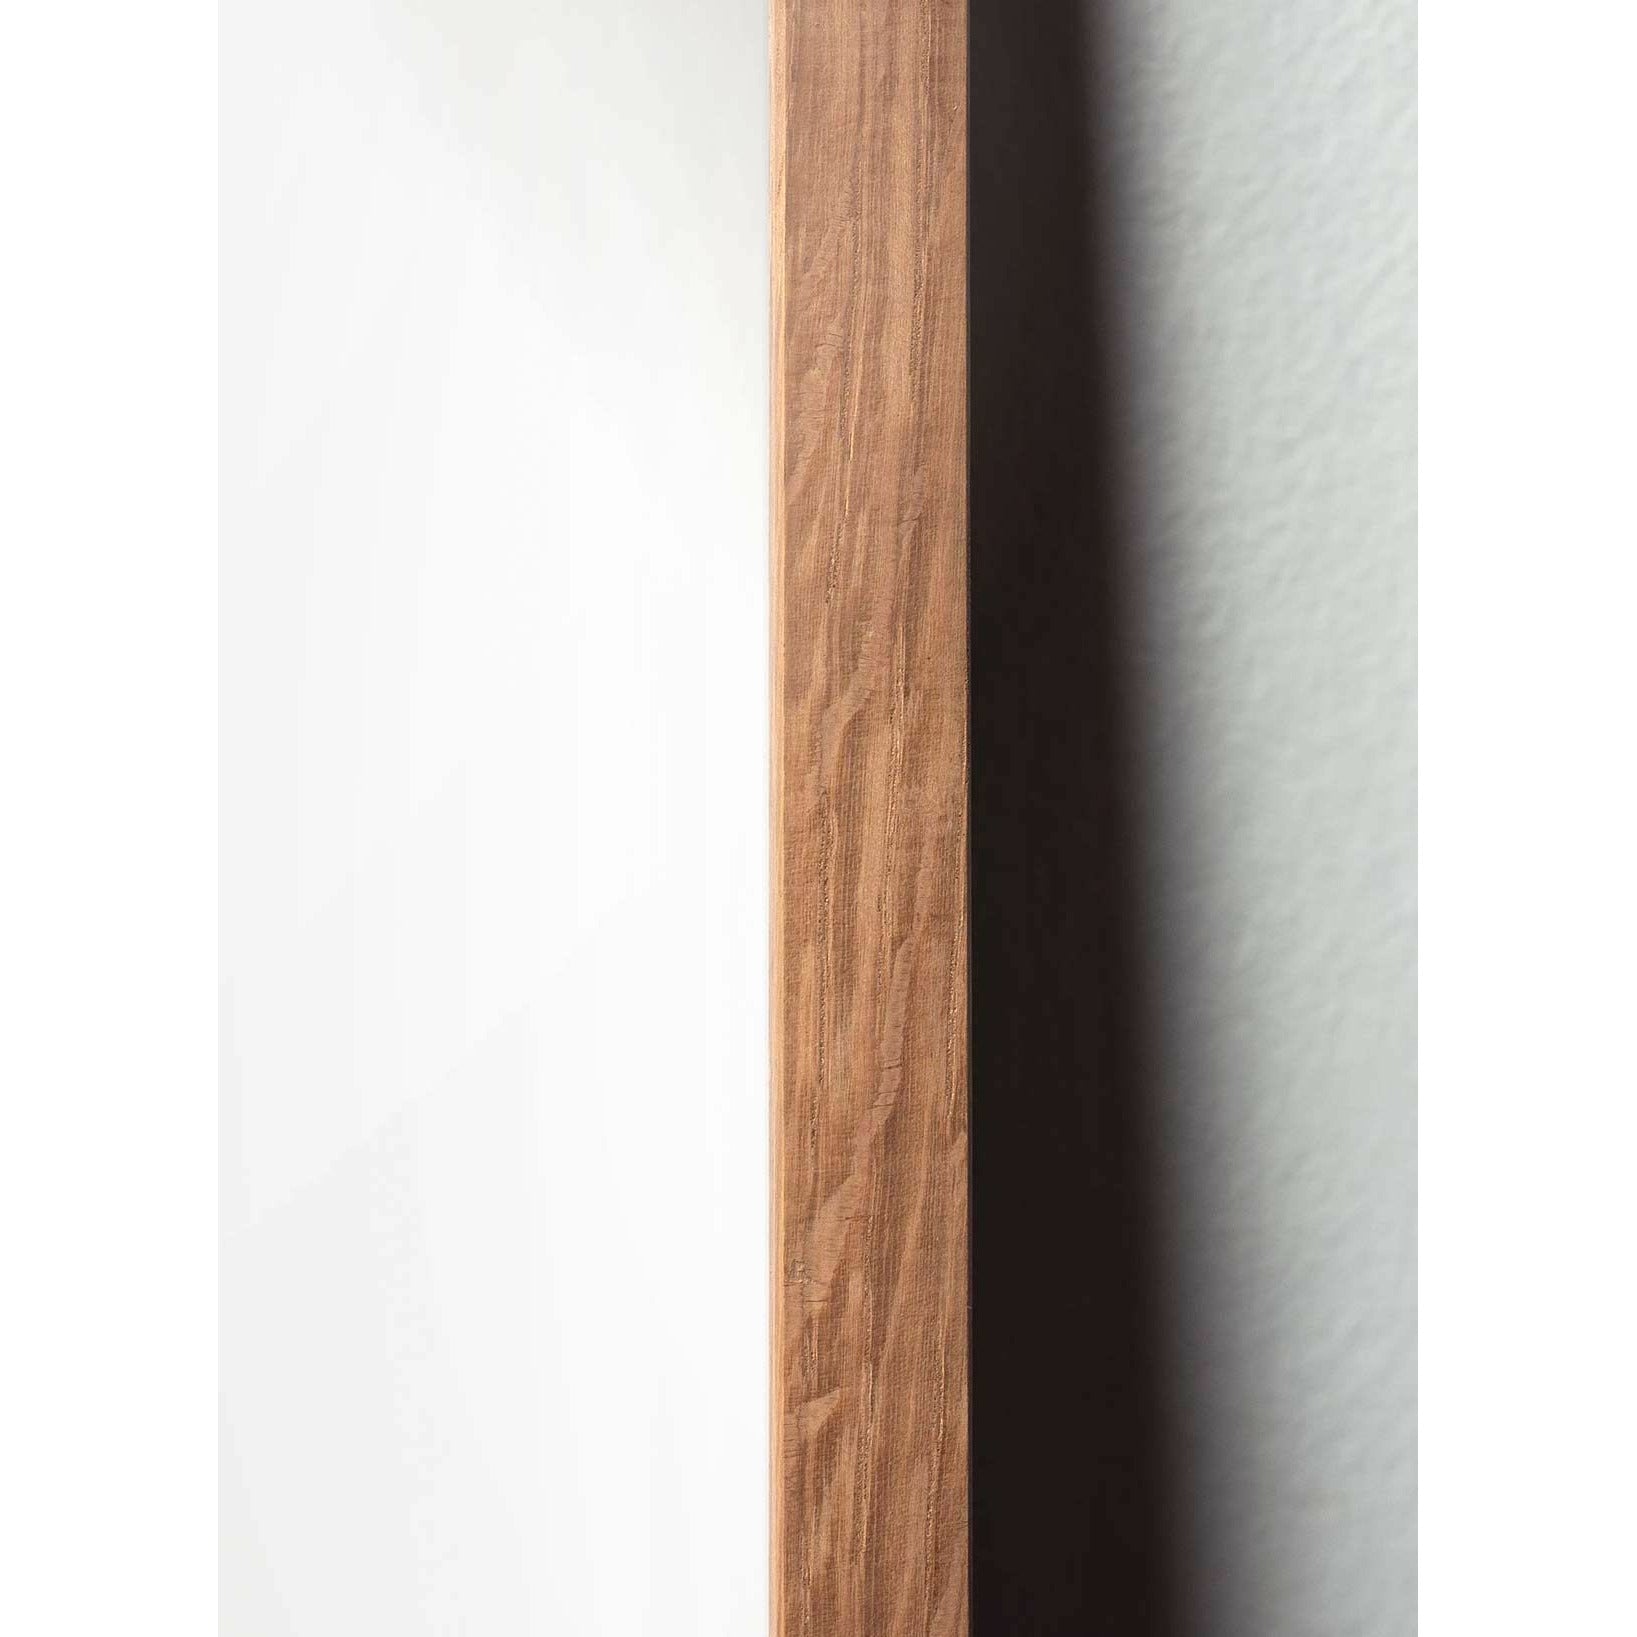 Póster clásico de cono de pino de creación, marco hecho de madera clara A5, fondo blanco